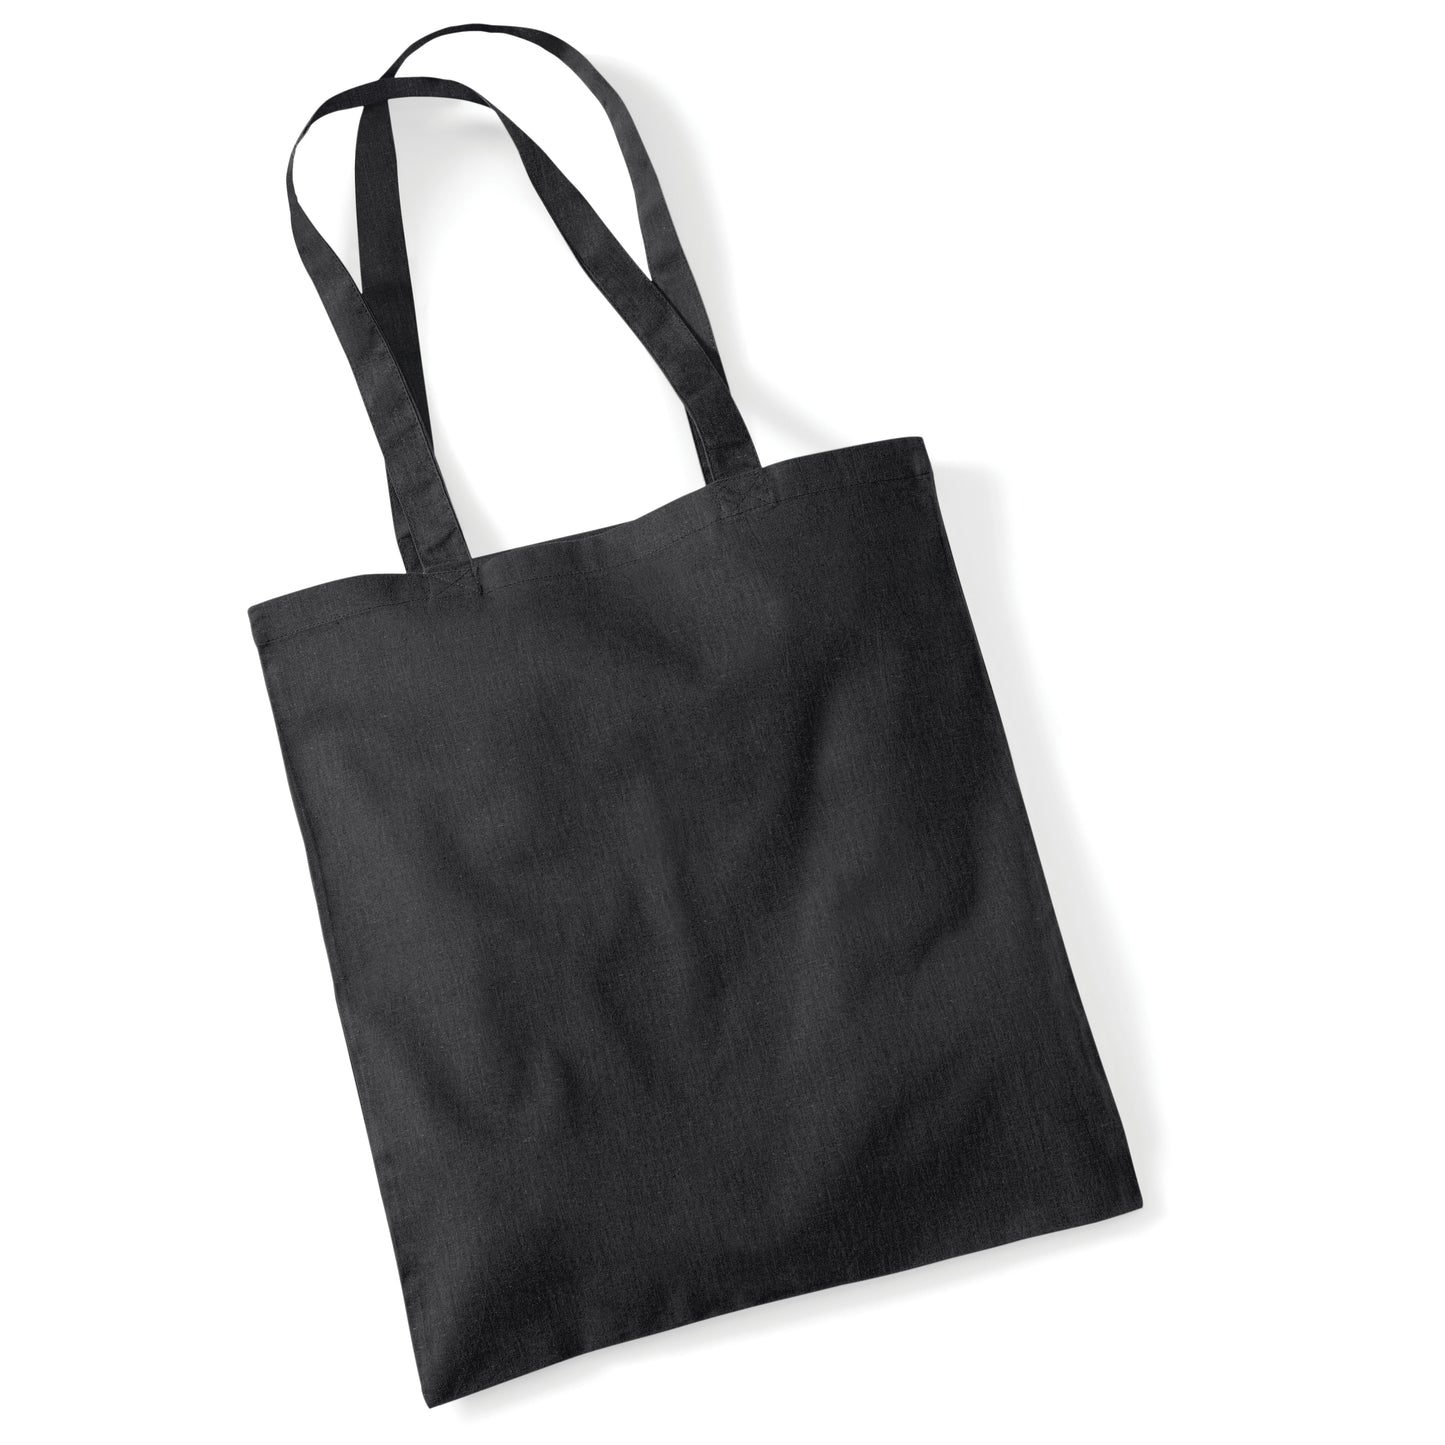 Bag for life - long handles